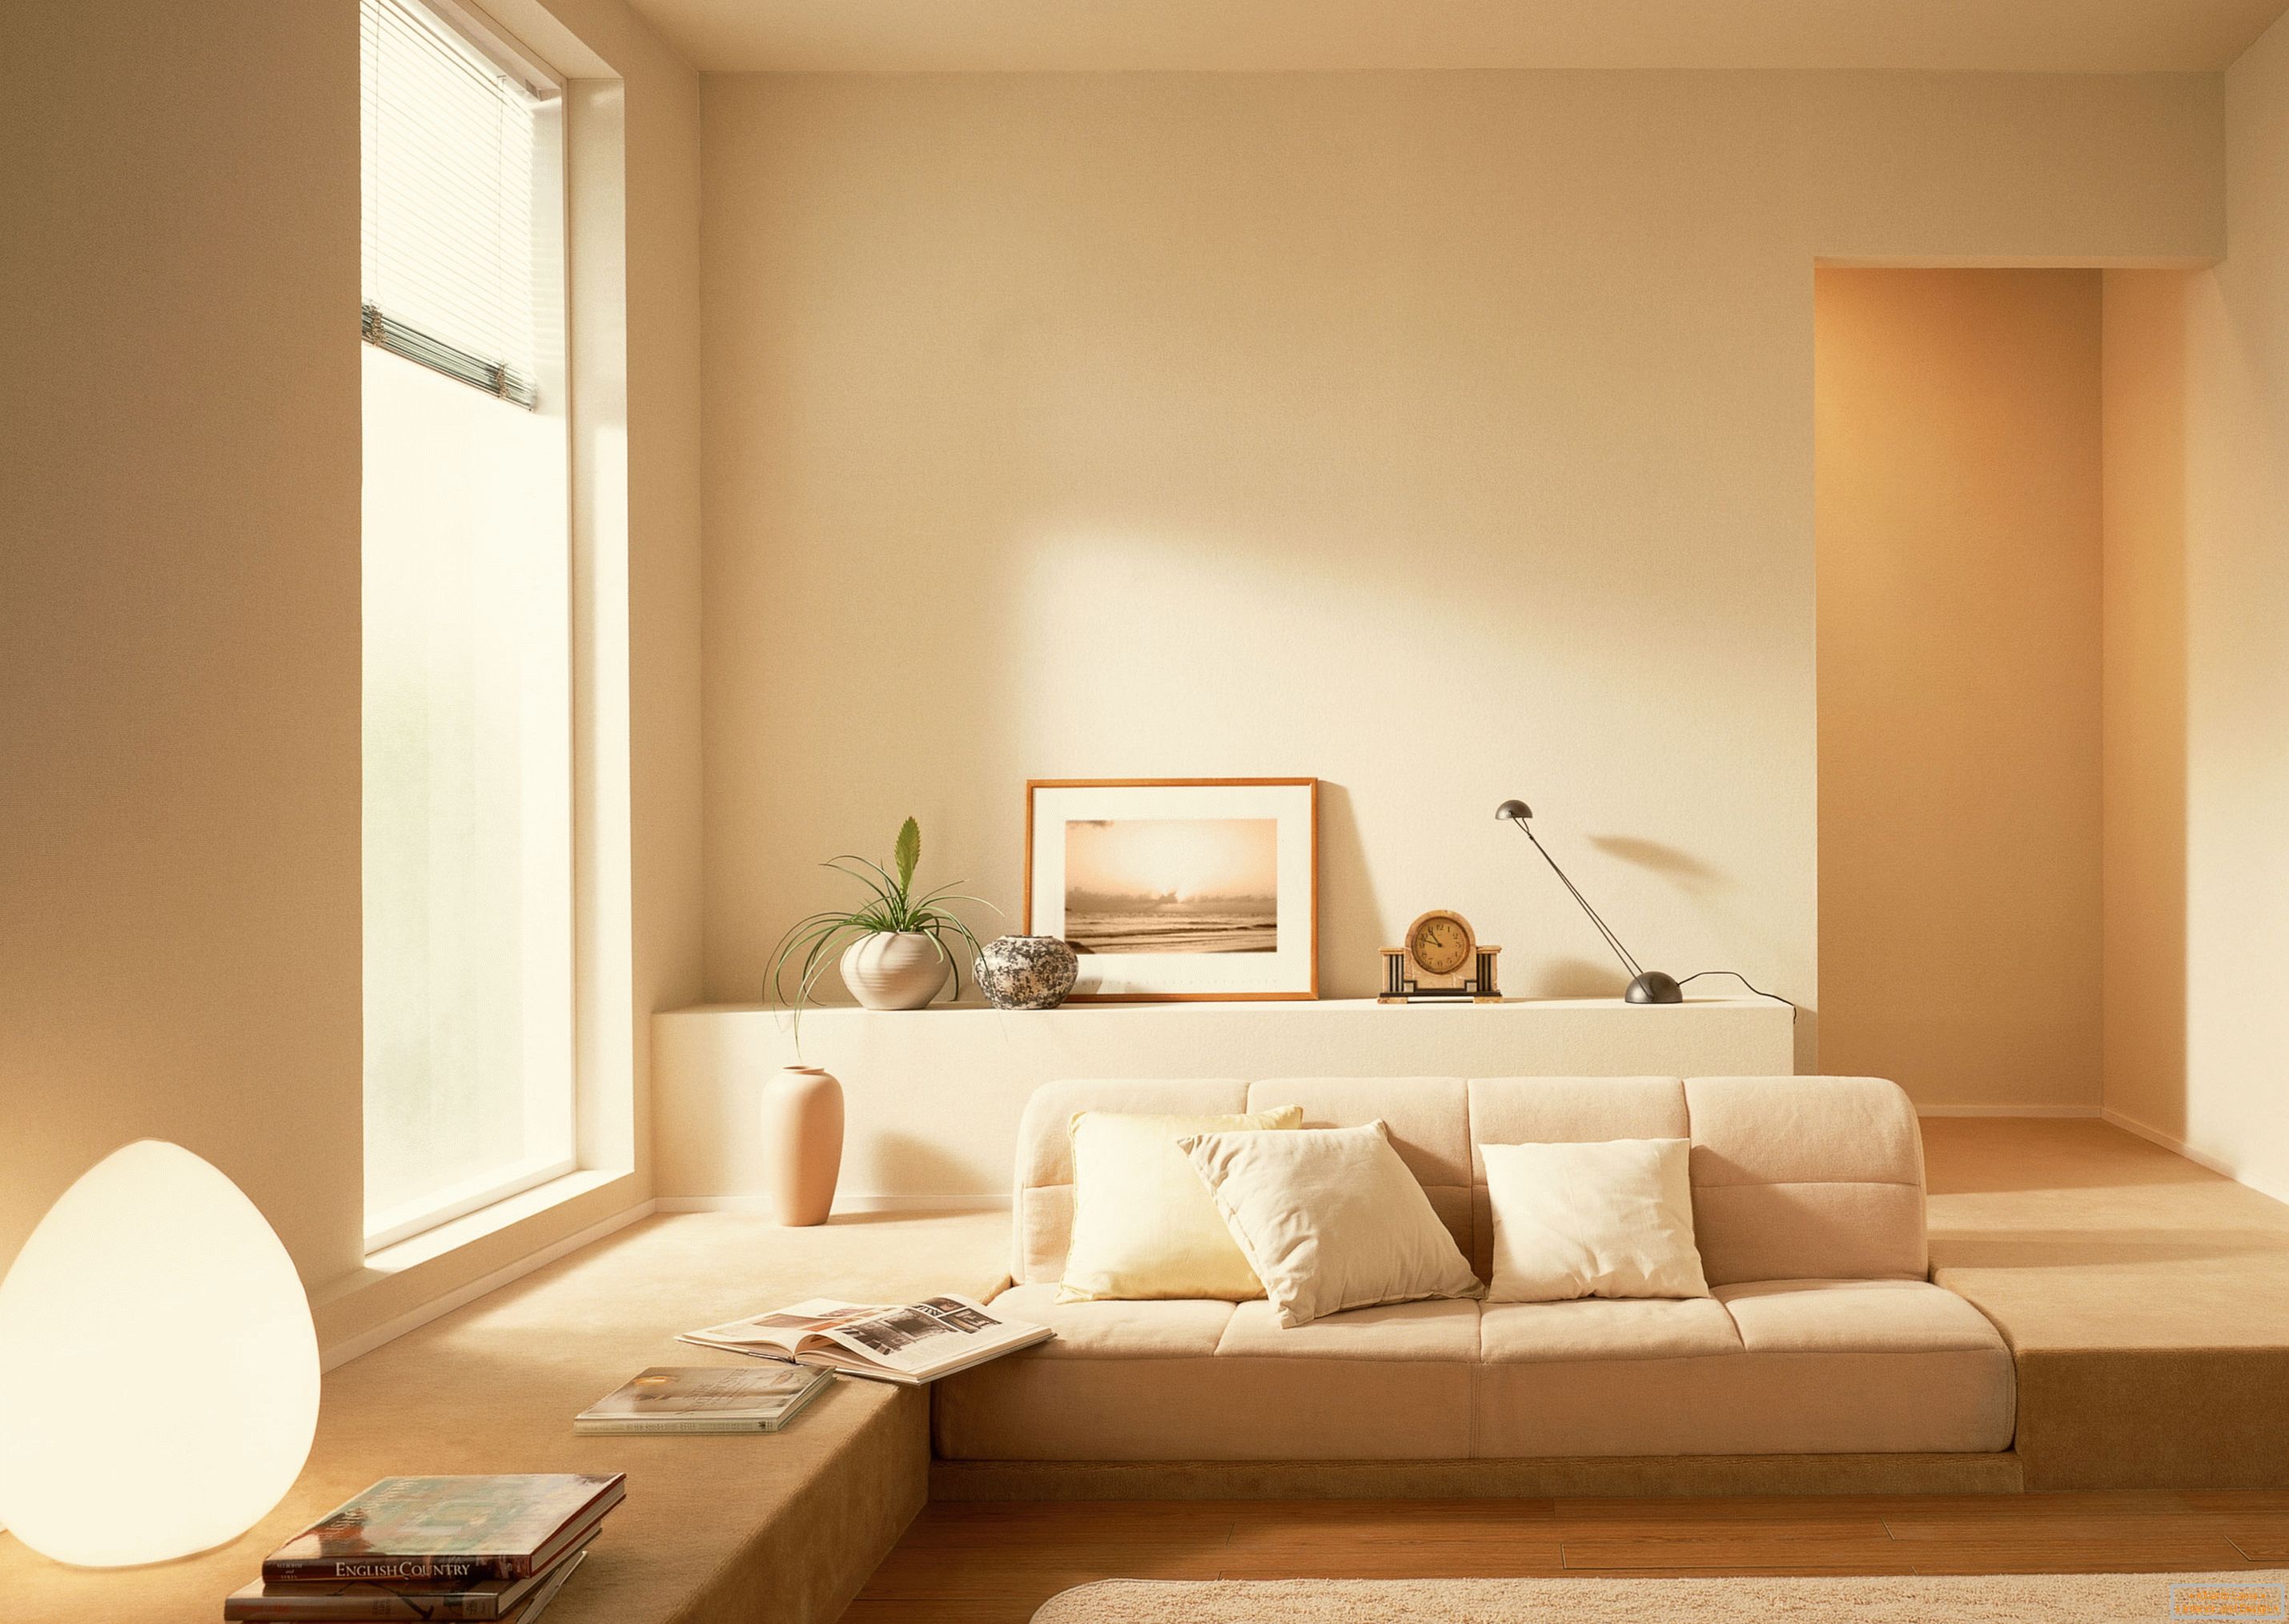 De acordo com o estilo do minimalismo, uma sombra bege foi usada para organizar o interior da sala de estar.